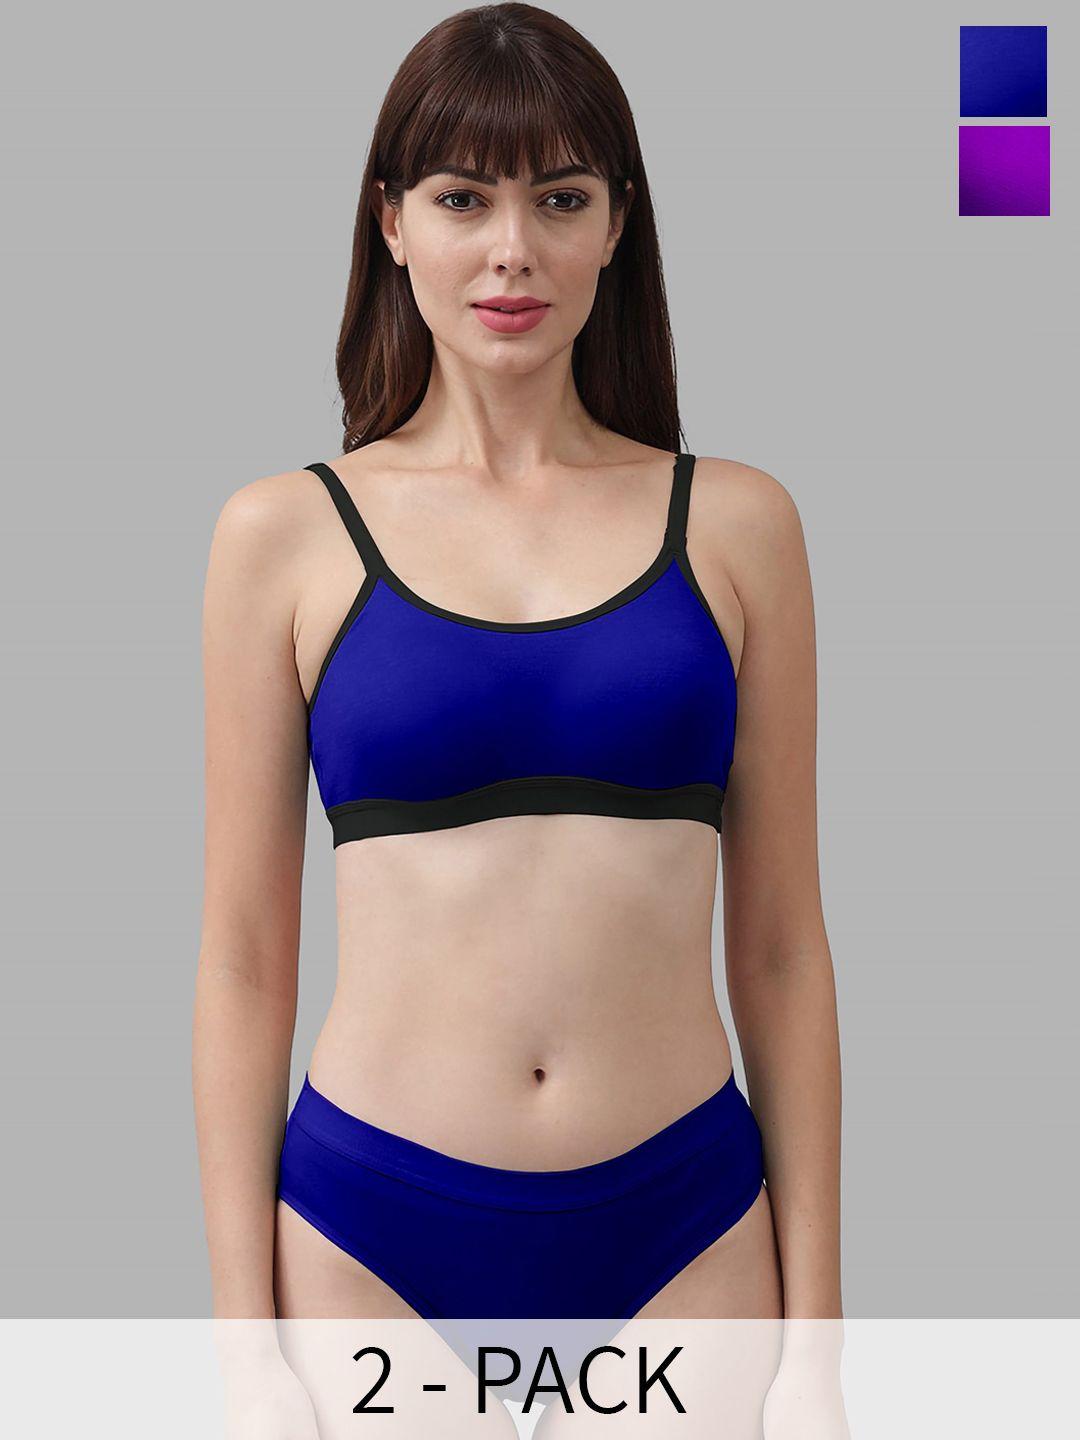 in-curve pack of 2 cotton lingerie set ea_cnora set_purple,blue